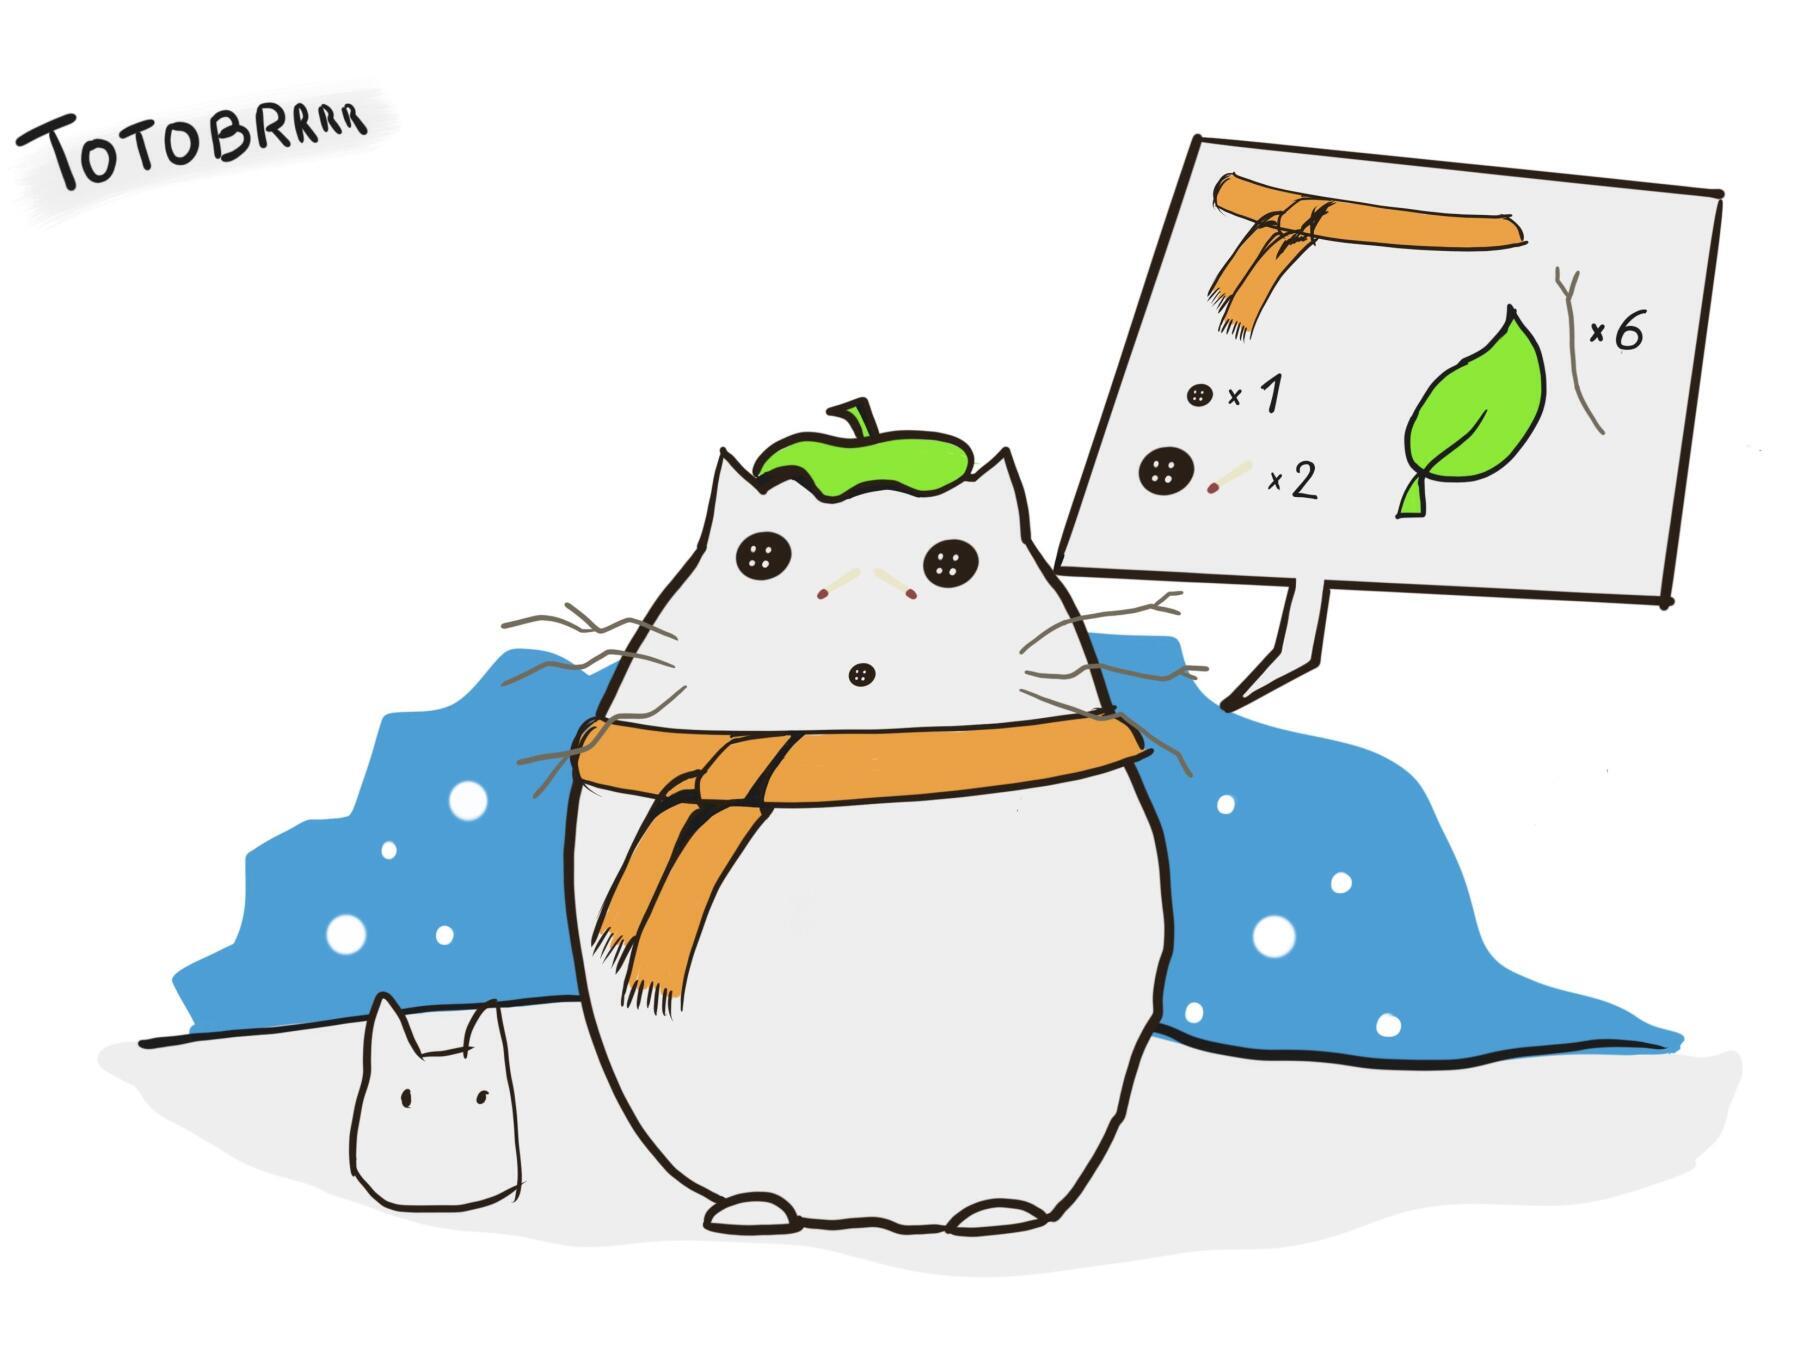 Laura’s Totobrrr snowman